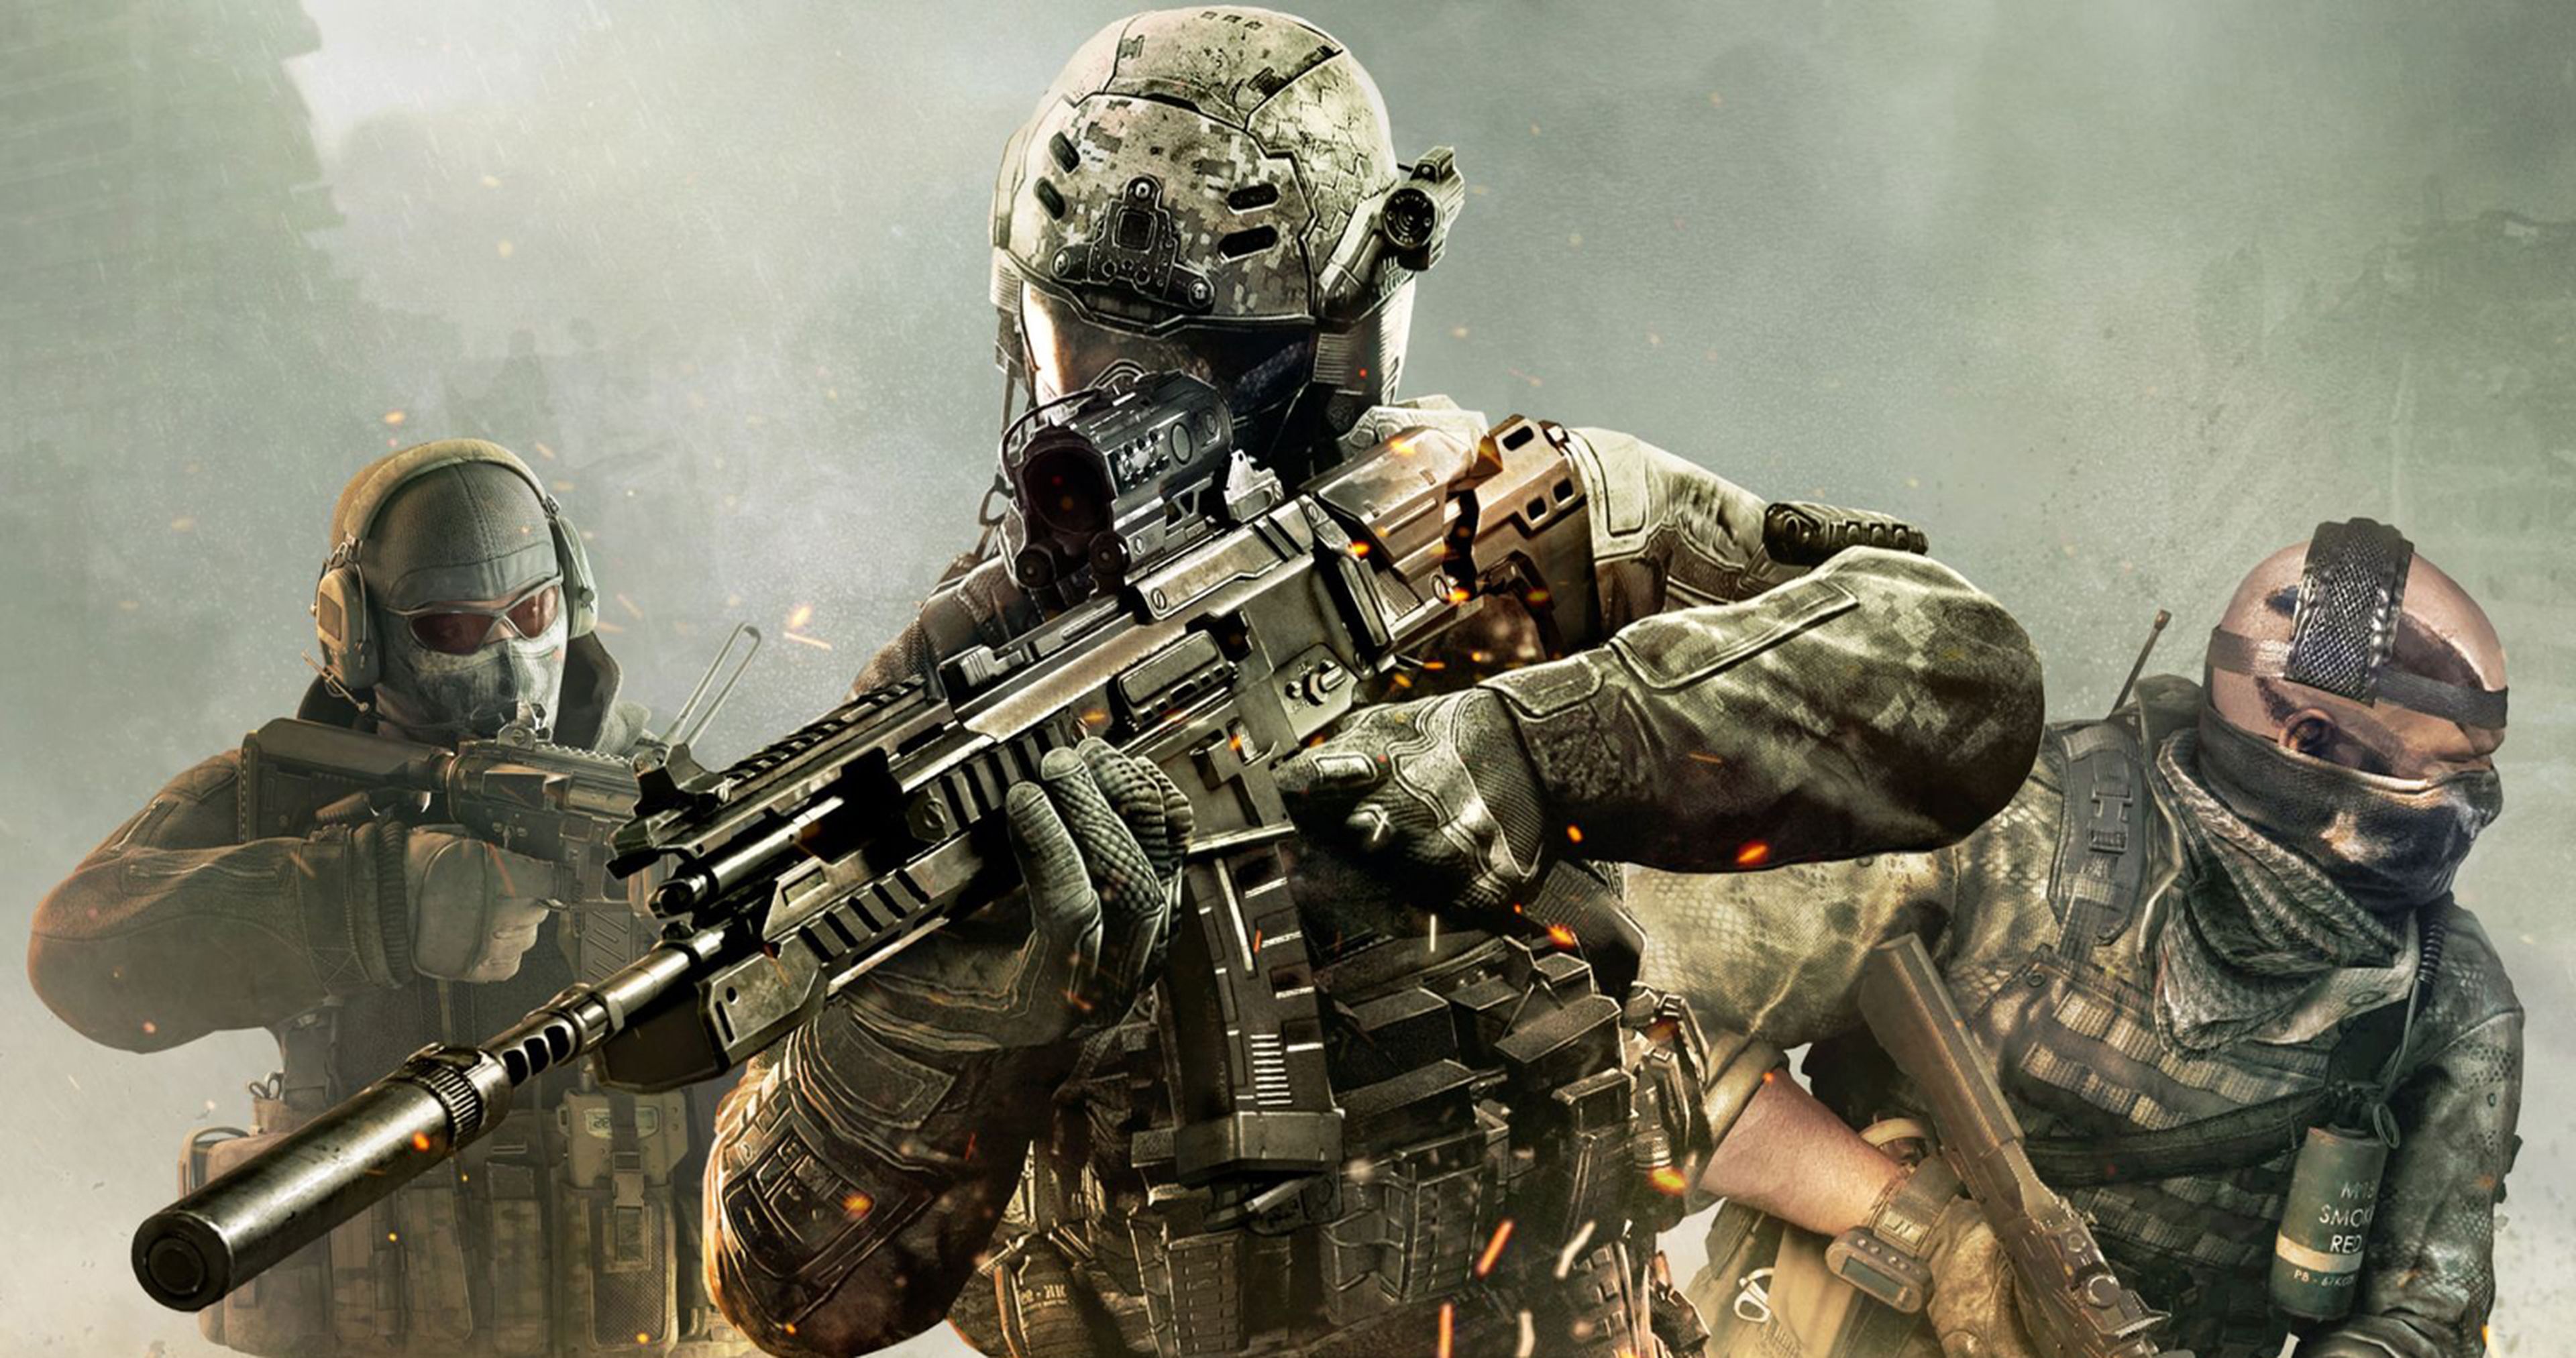 Call of Duty Mobile: 12 cosas que no te cuenta el juego y que debes saber  para jugar mejor